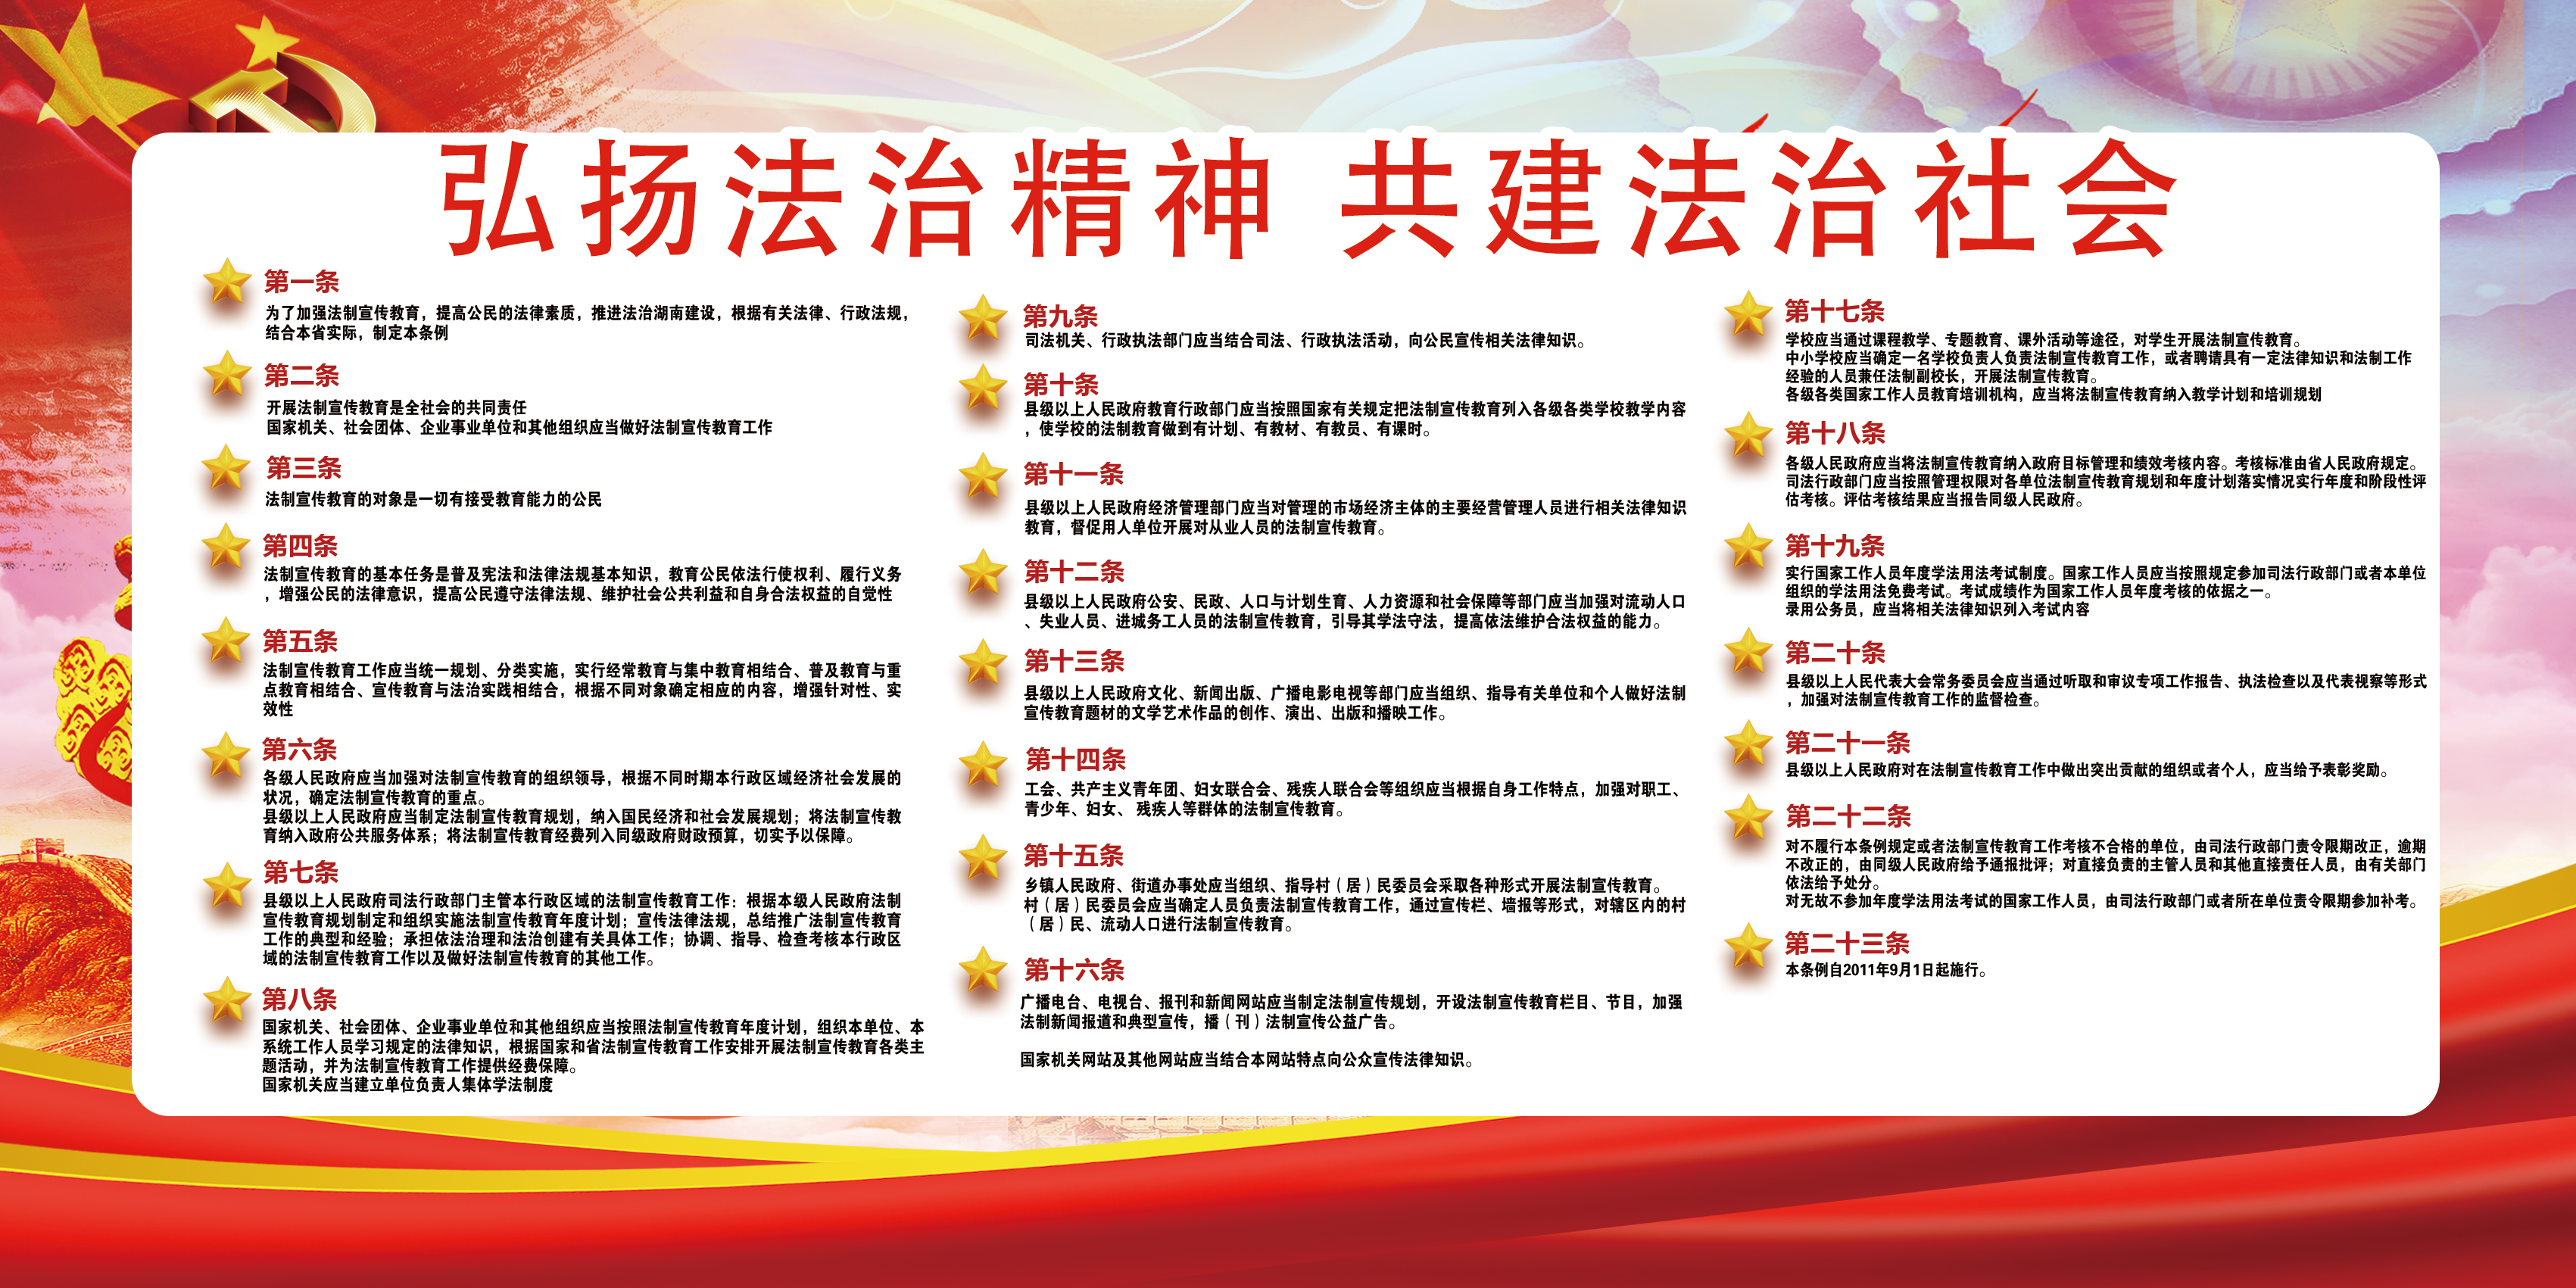 大气维护宪法权威建设法制中国双面展板折页.png